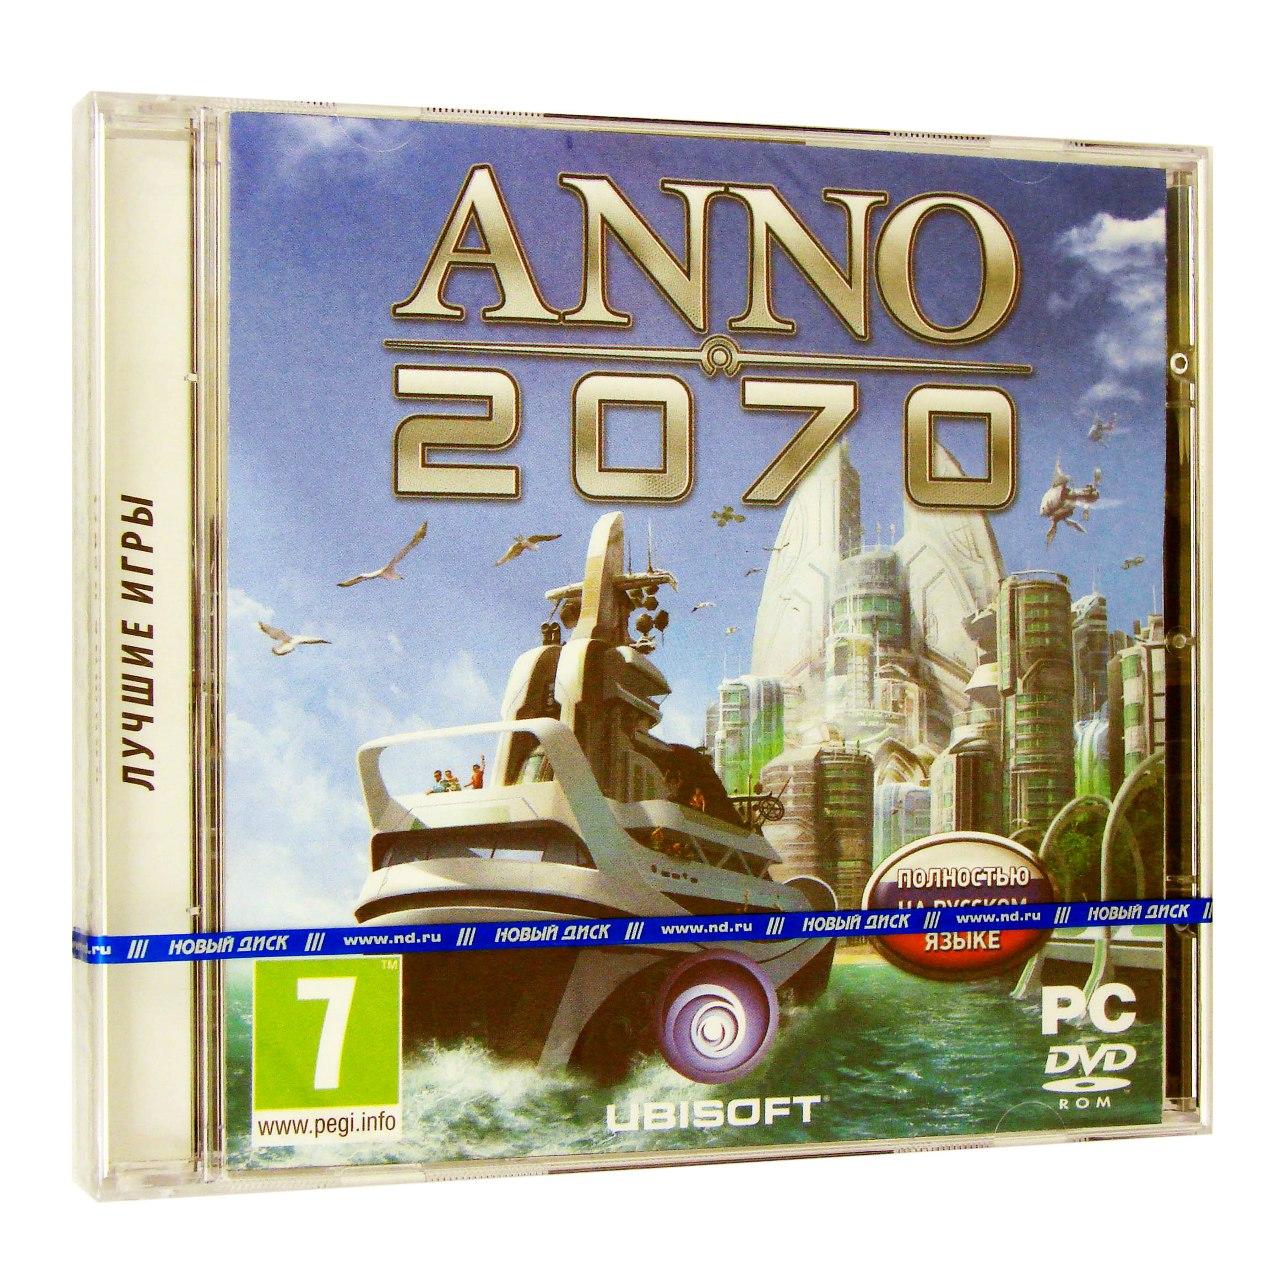 Компьютерный компакт-диск Anno 2070 (PC), фирма "Новый диск", 1DVD